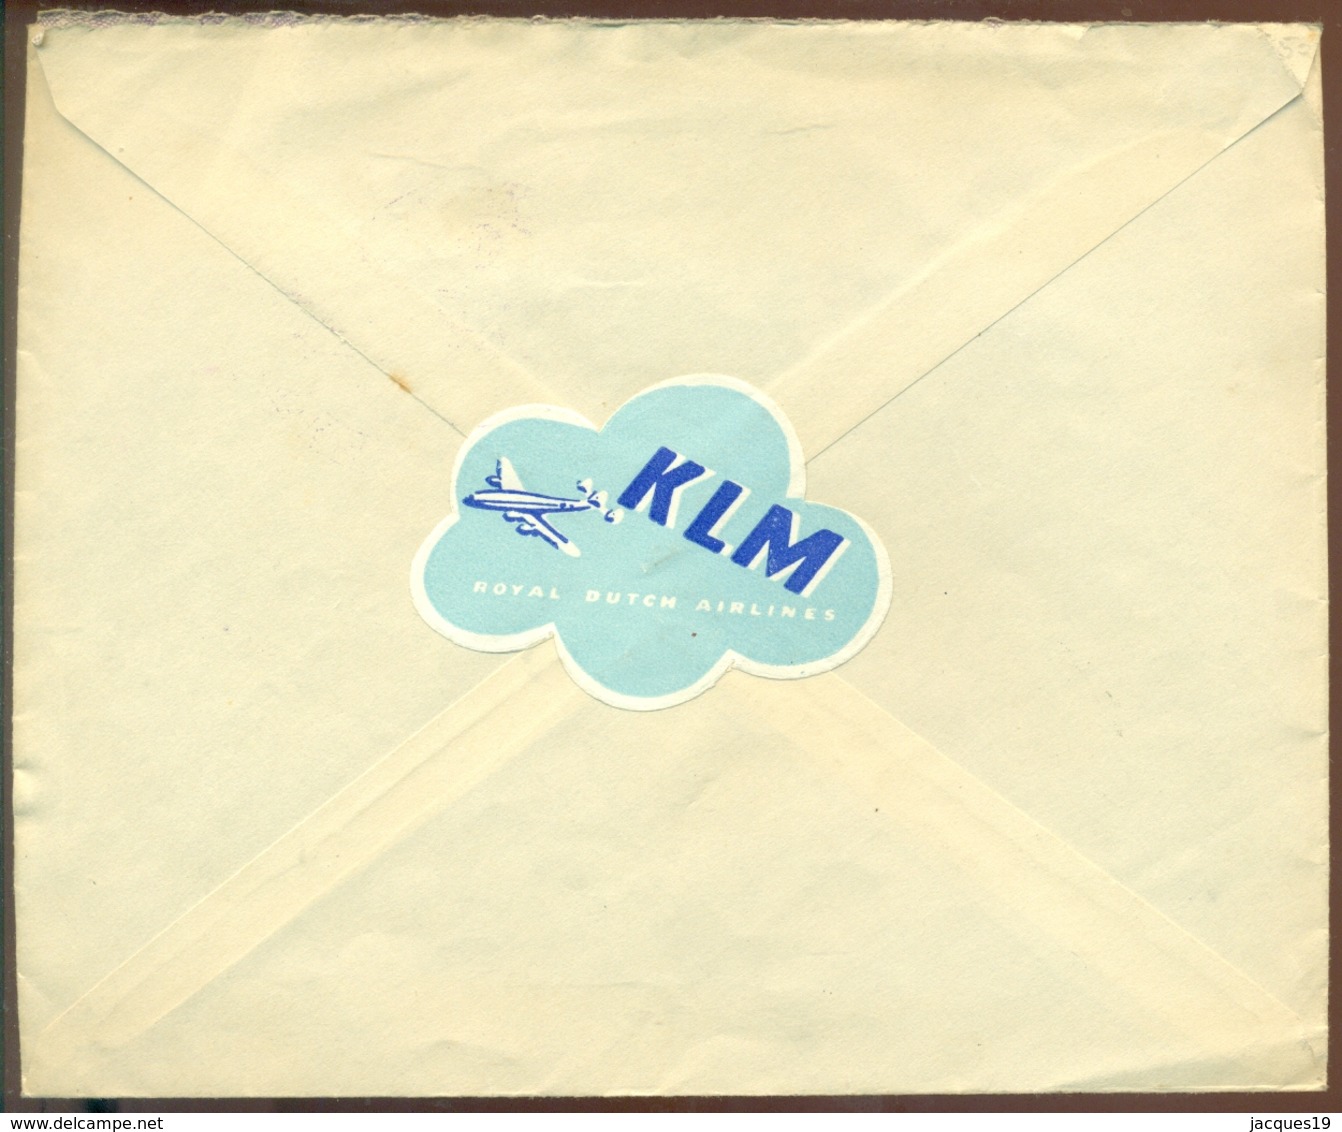 Nederland 1948 Envelop Met Complete Serie Kinderzegels NVPH 508-512 Speciaal Stempel "Autopostkantoor" - Lettres & Documents